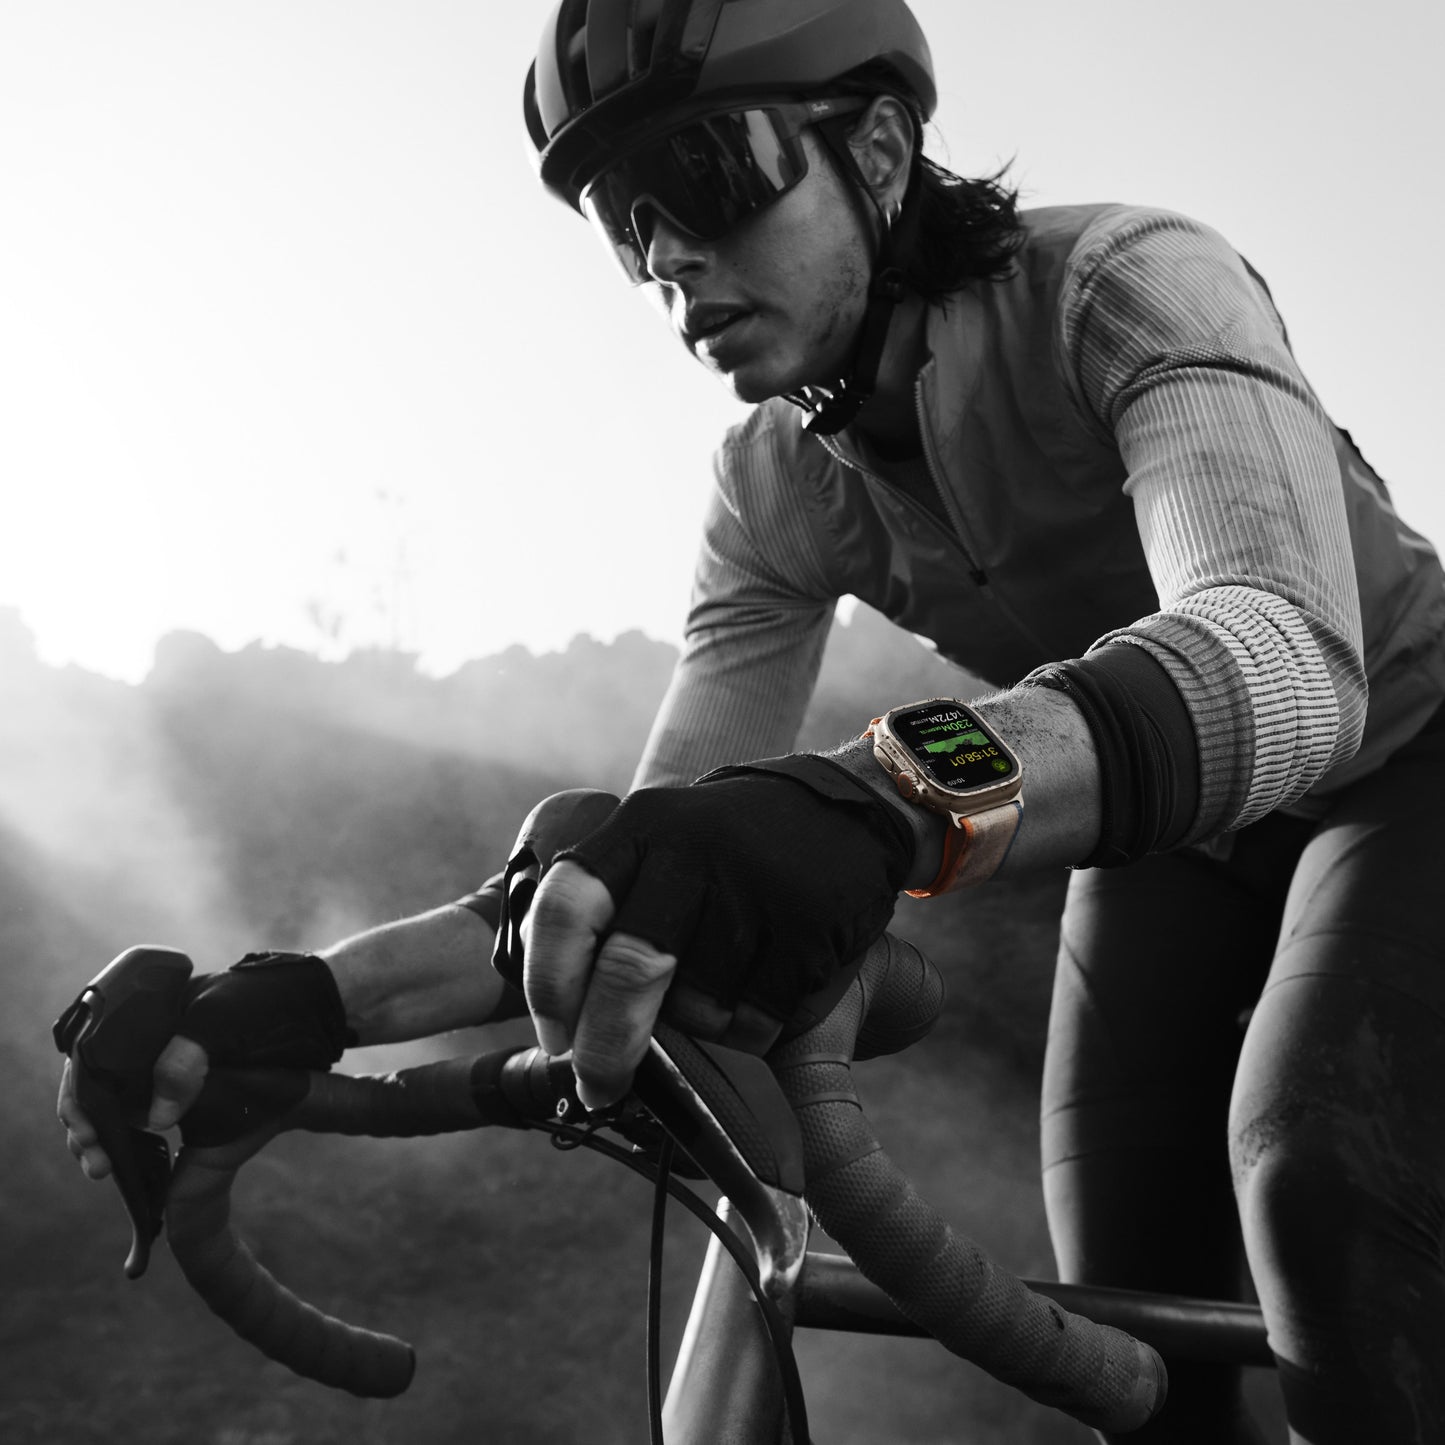 Apple Watch Ultra 2 (GPS + Cellular) - Caja de titanio de 49 mm - Correa Loop Alpine verde oliva - Talla S